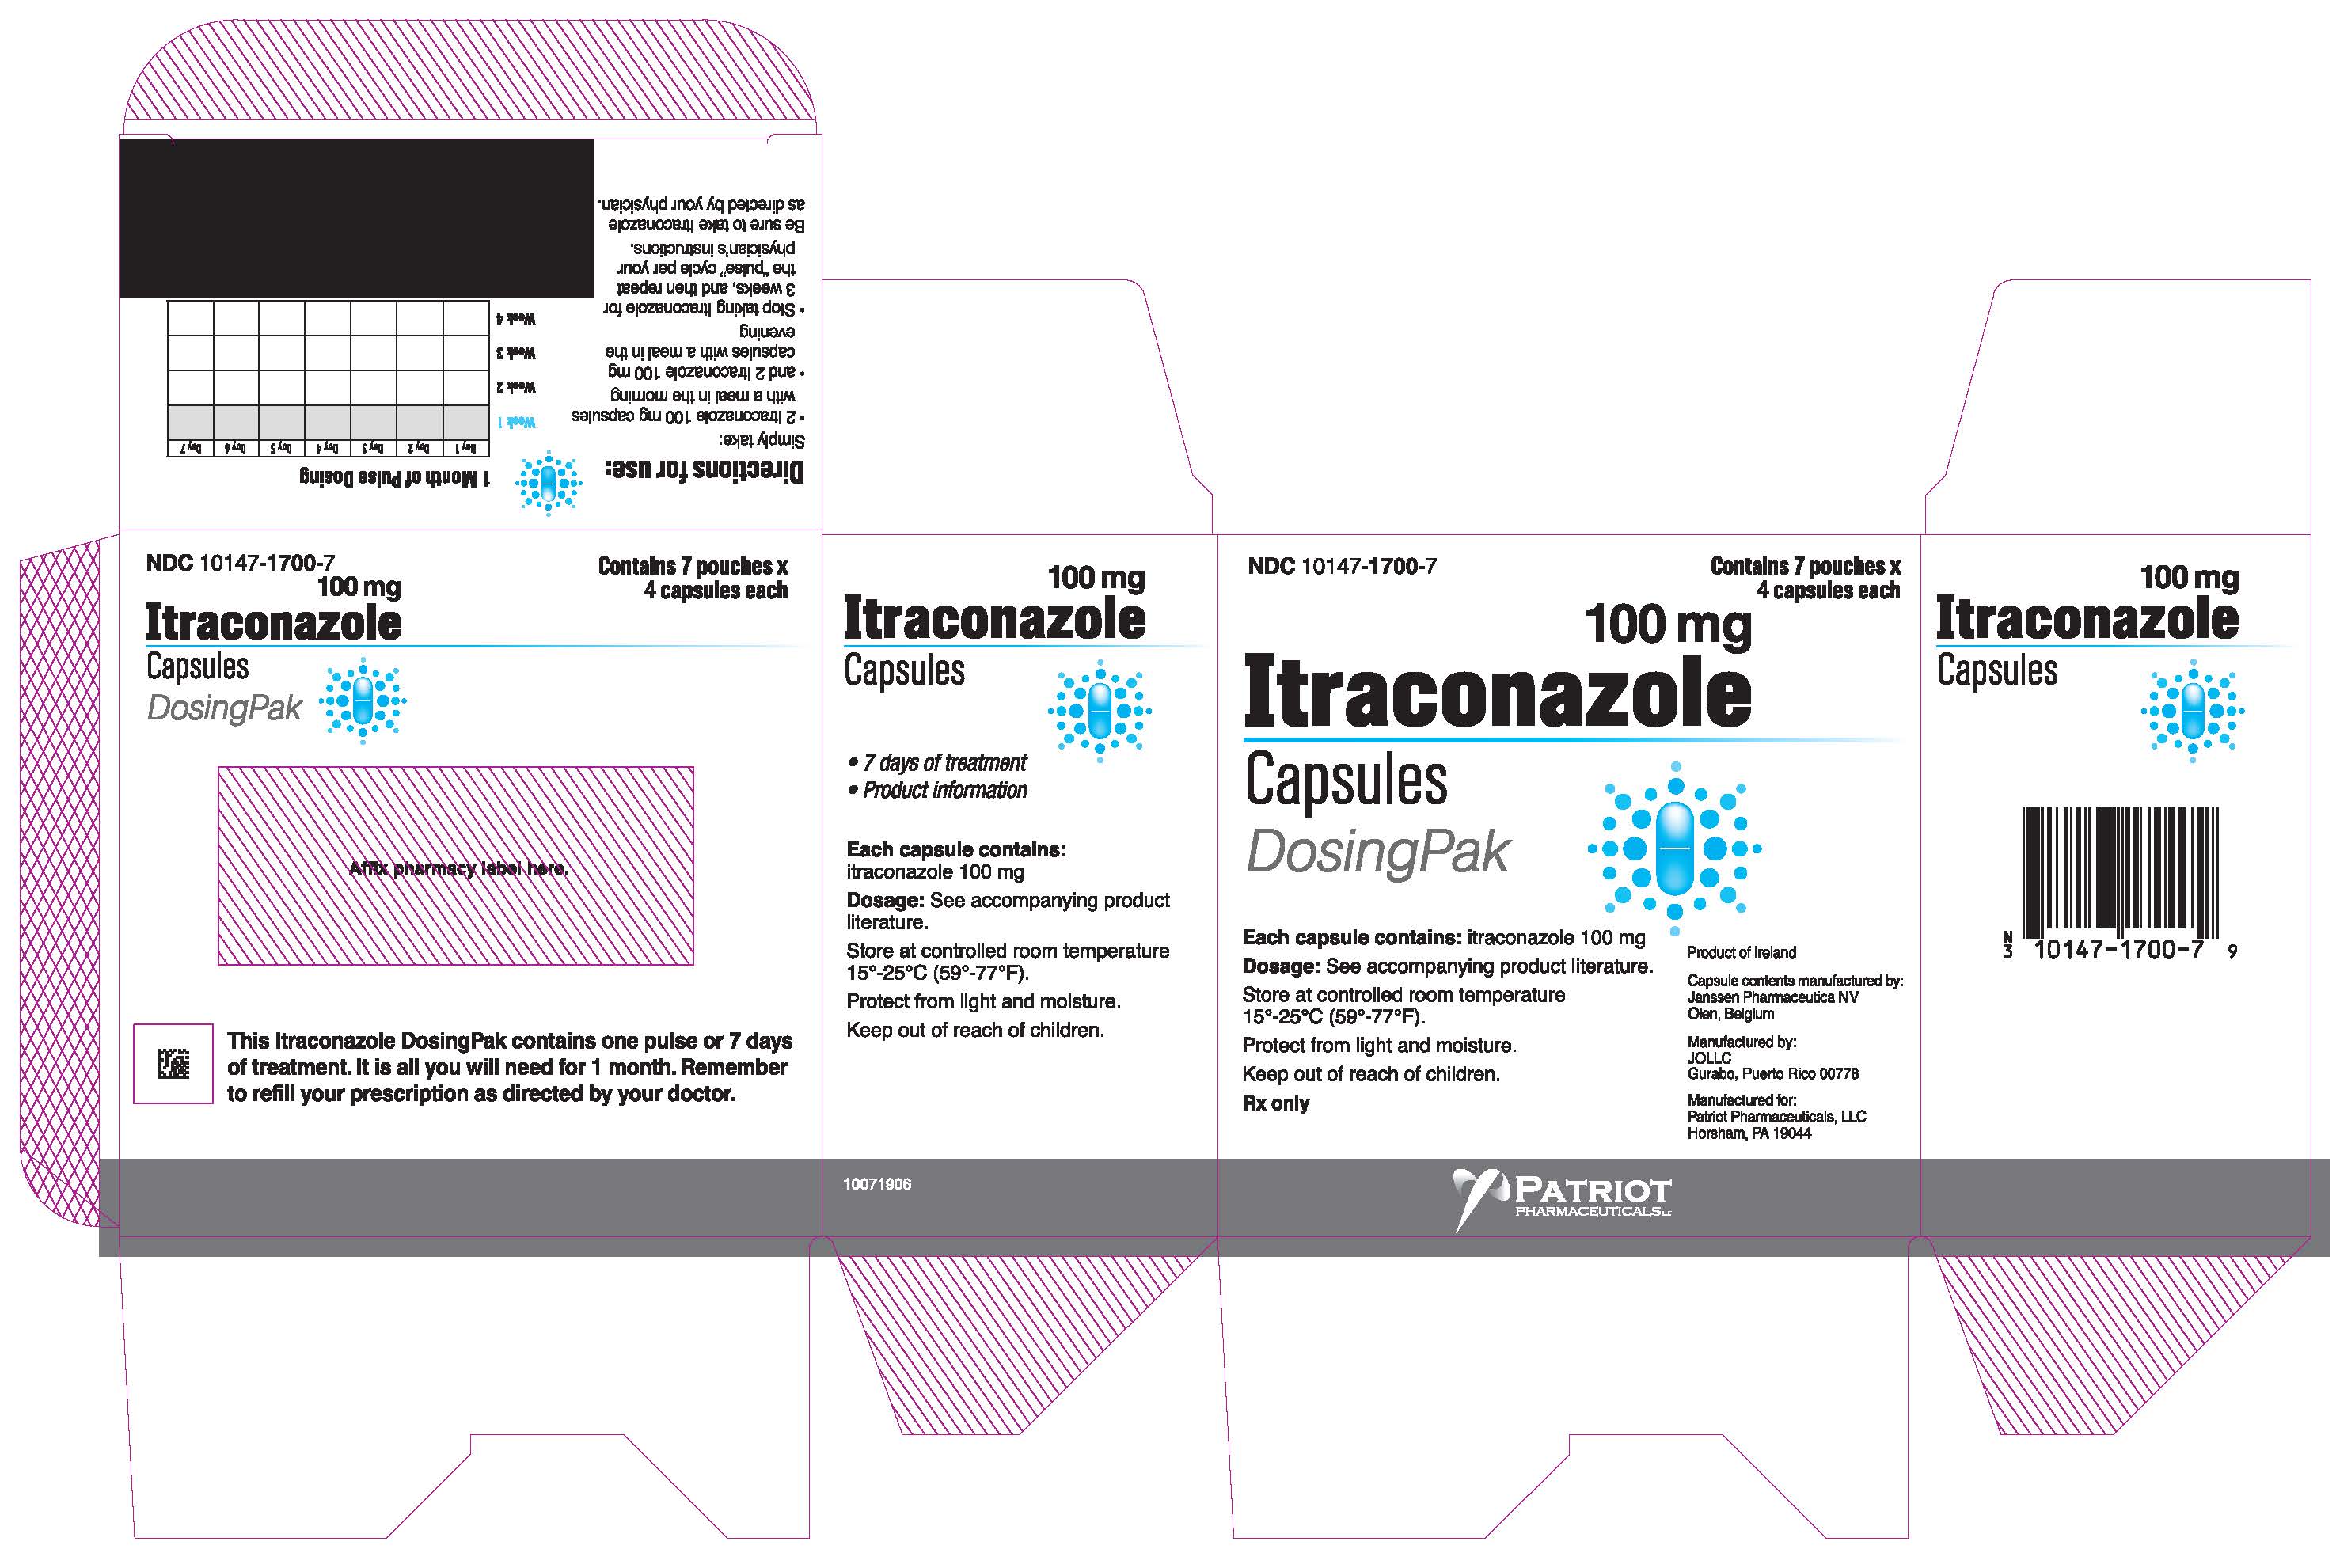 Principal Display Panel - 100 mg Carton